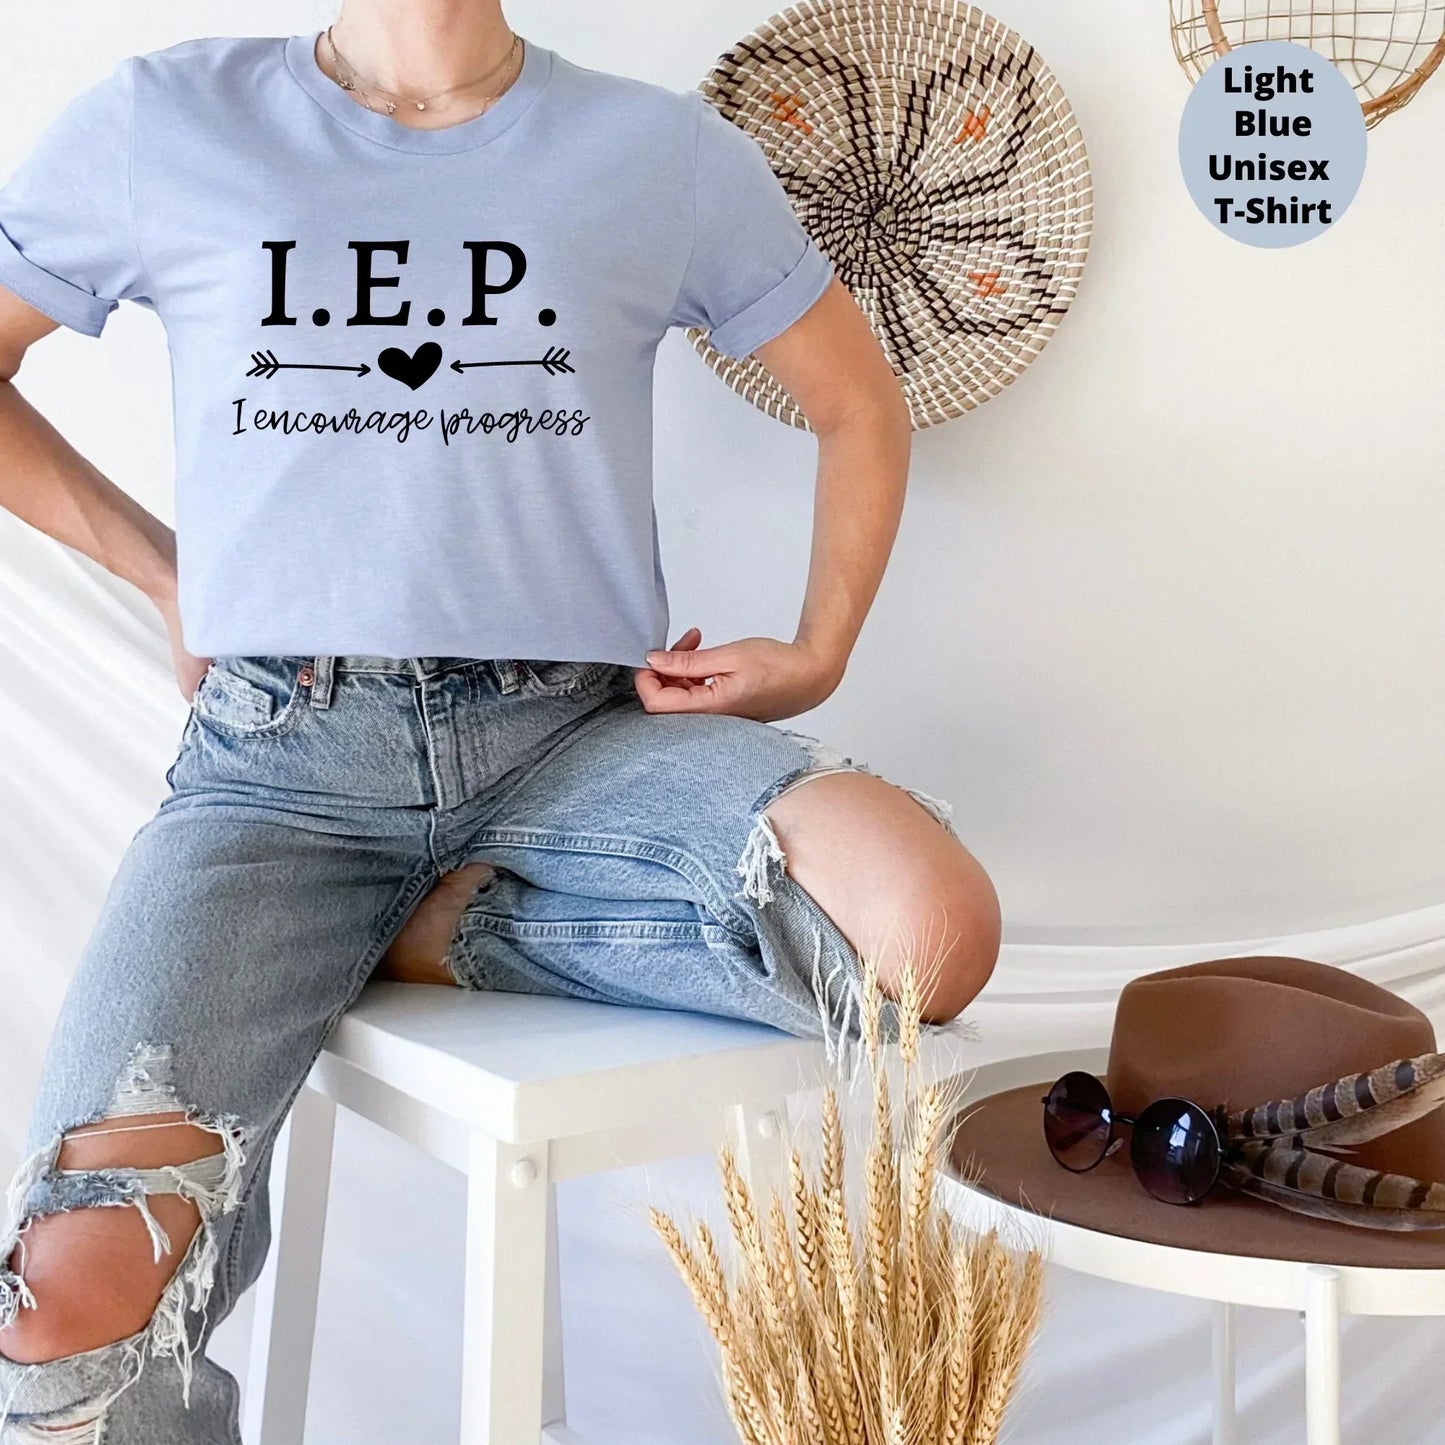 IEP, Special Education Teacher Shirt